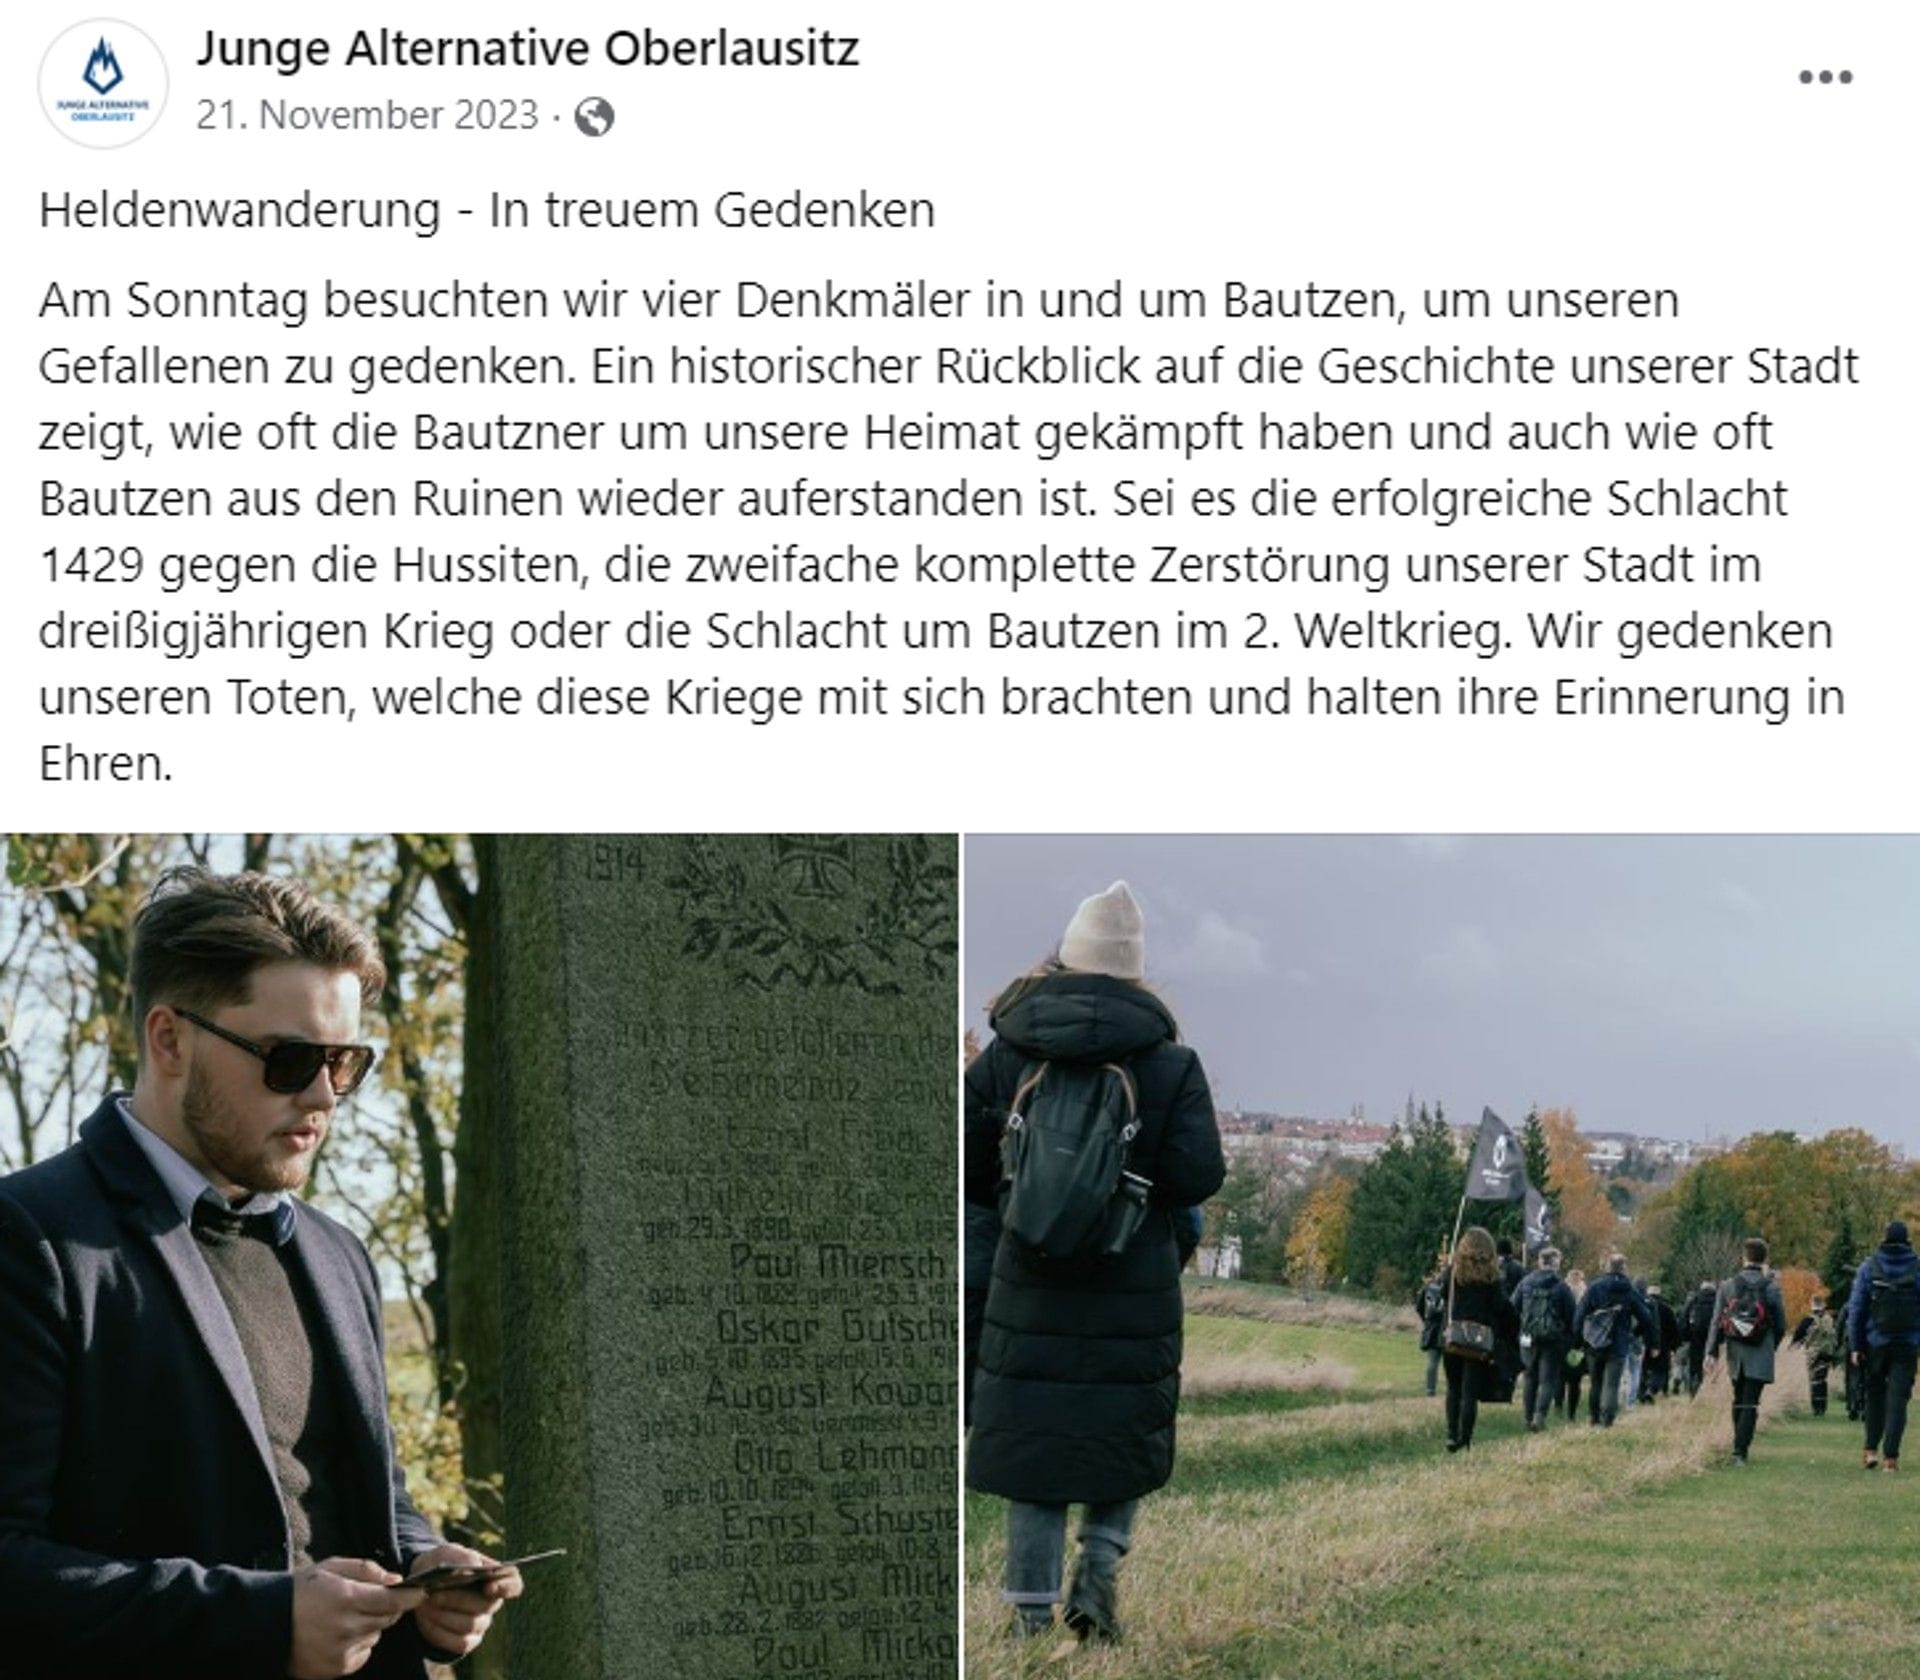 Facebook-Beitrag der örtlichen AfD-Jugend zur "Heldenwanderung": Wehrmachtssoldaten, die von den Nazis in den Tod geschickt wurden, gelten der Jungen Alternative als Männer, die "um unsere Heimat gekämpft haben".